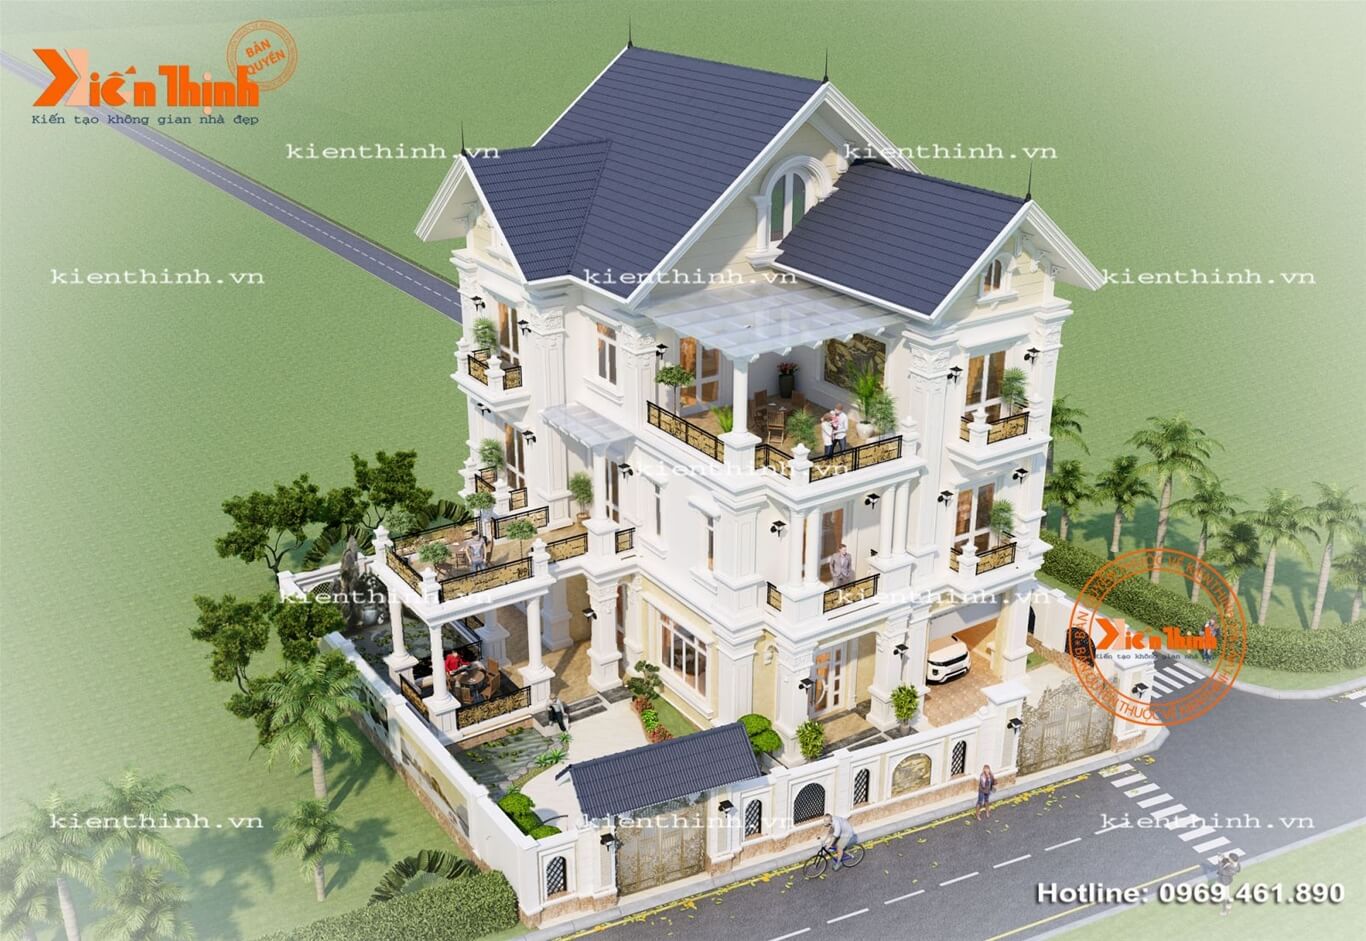 Thiết kế thi công biệt thự 3 tầng tân cổ điển đẹp ở Thái Bình